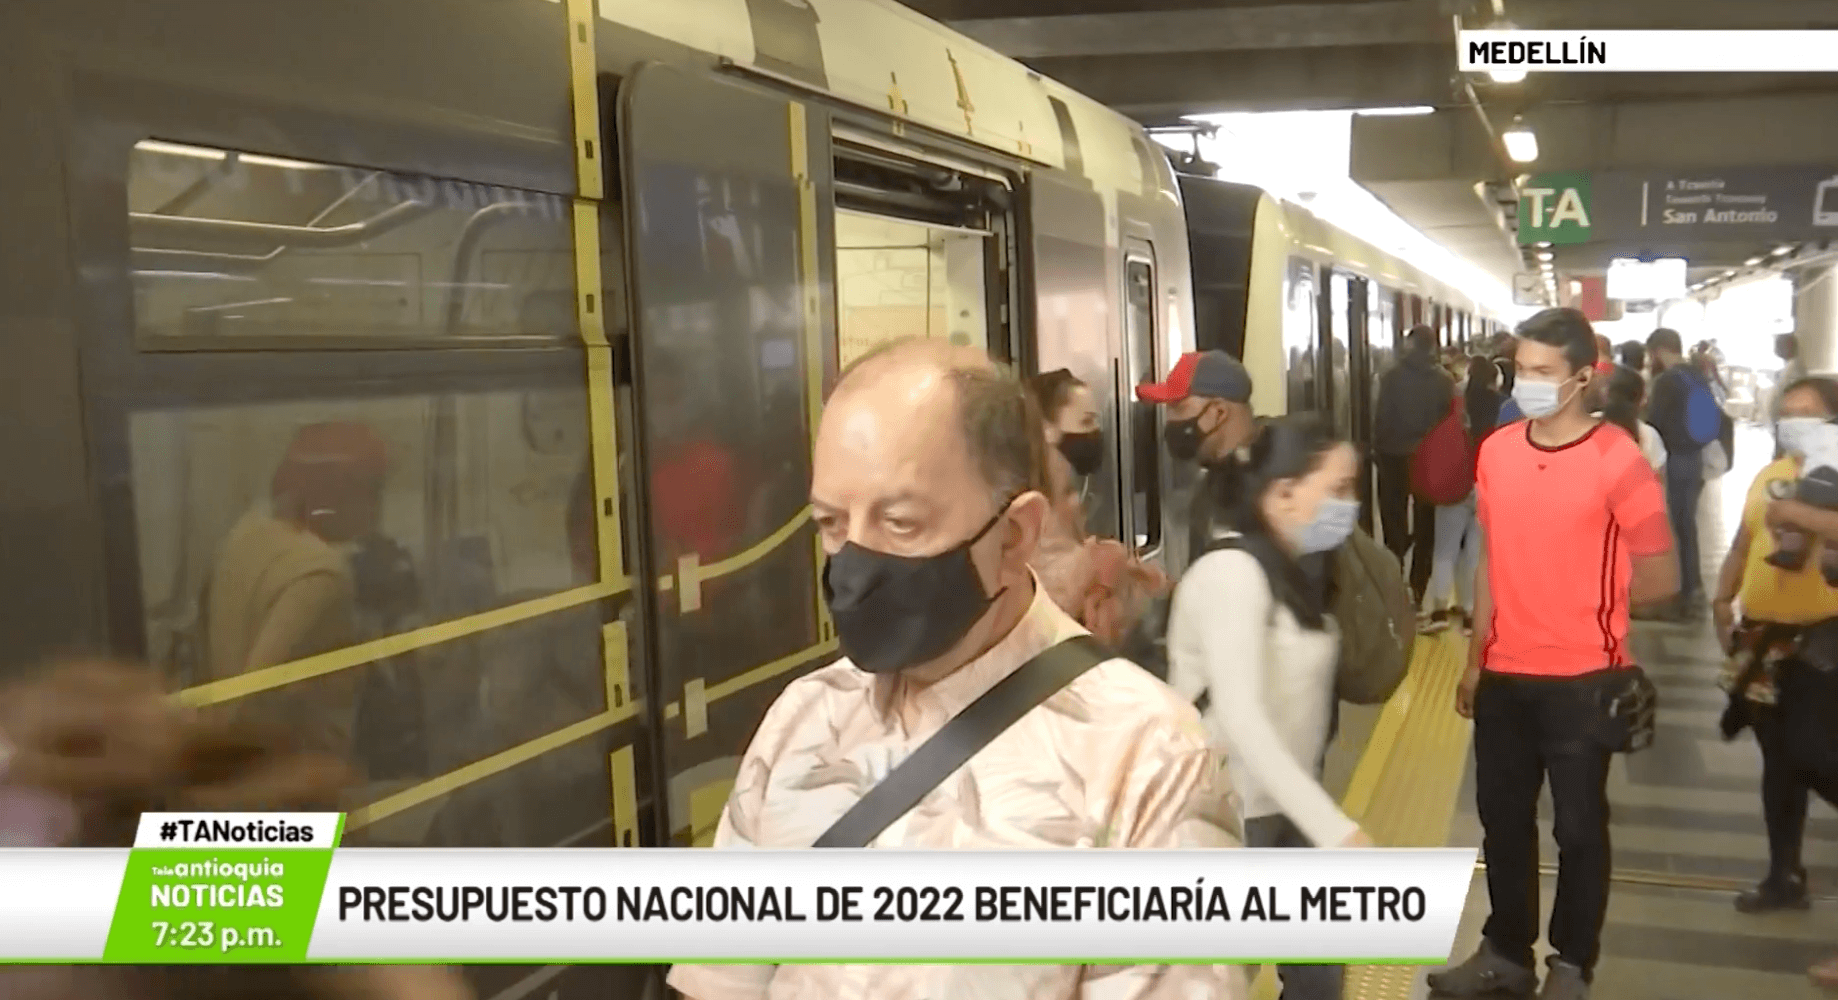 Presupuesto nacional de 2022 beneficiaría al Metro